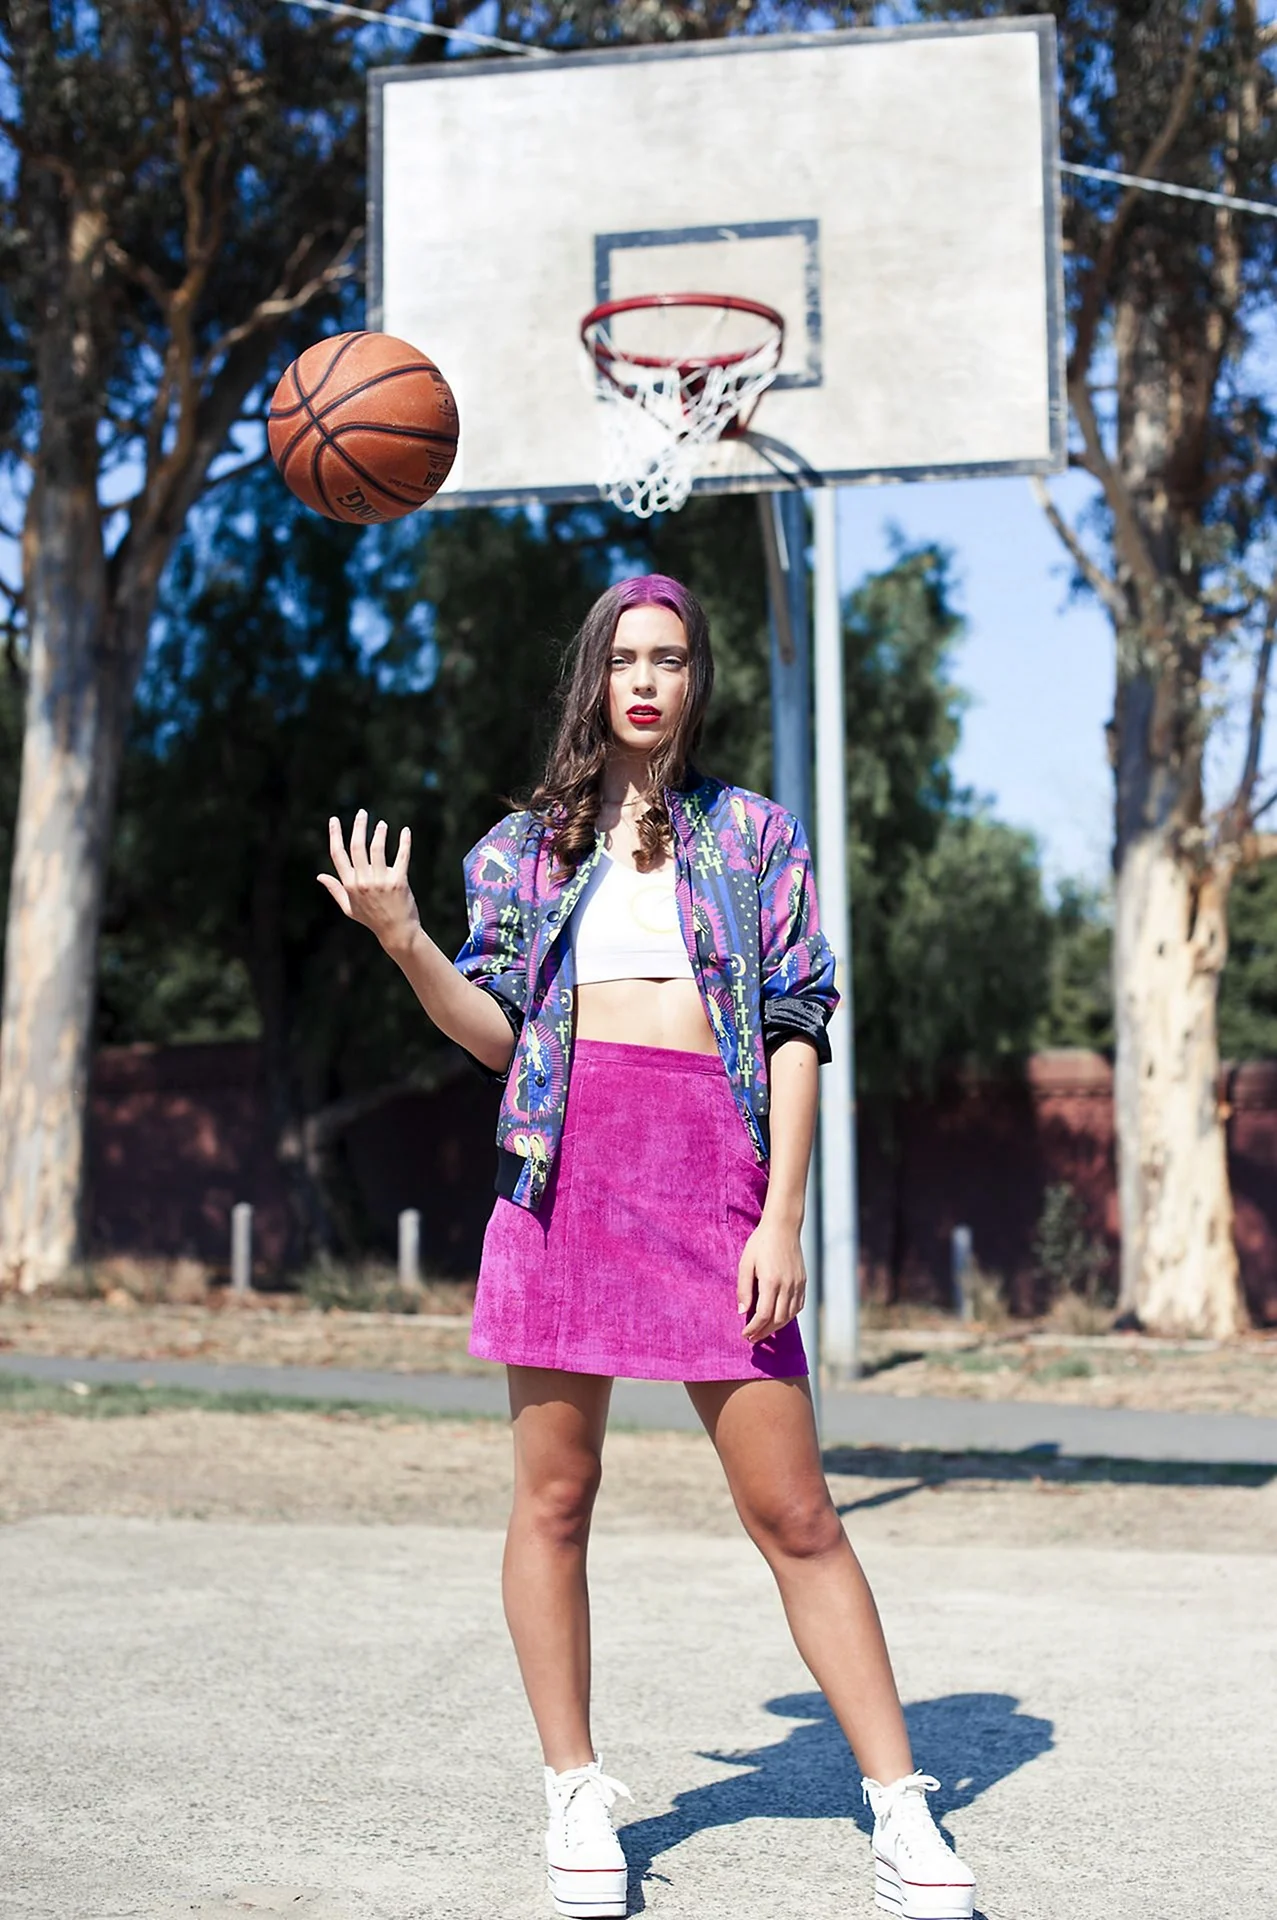 Девушка на баскетбольной площадке